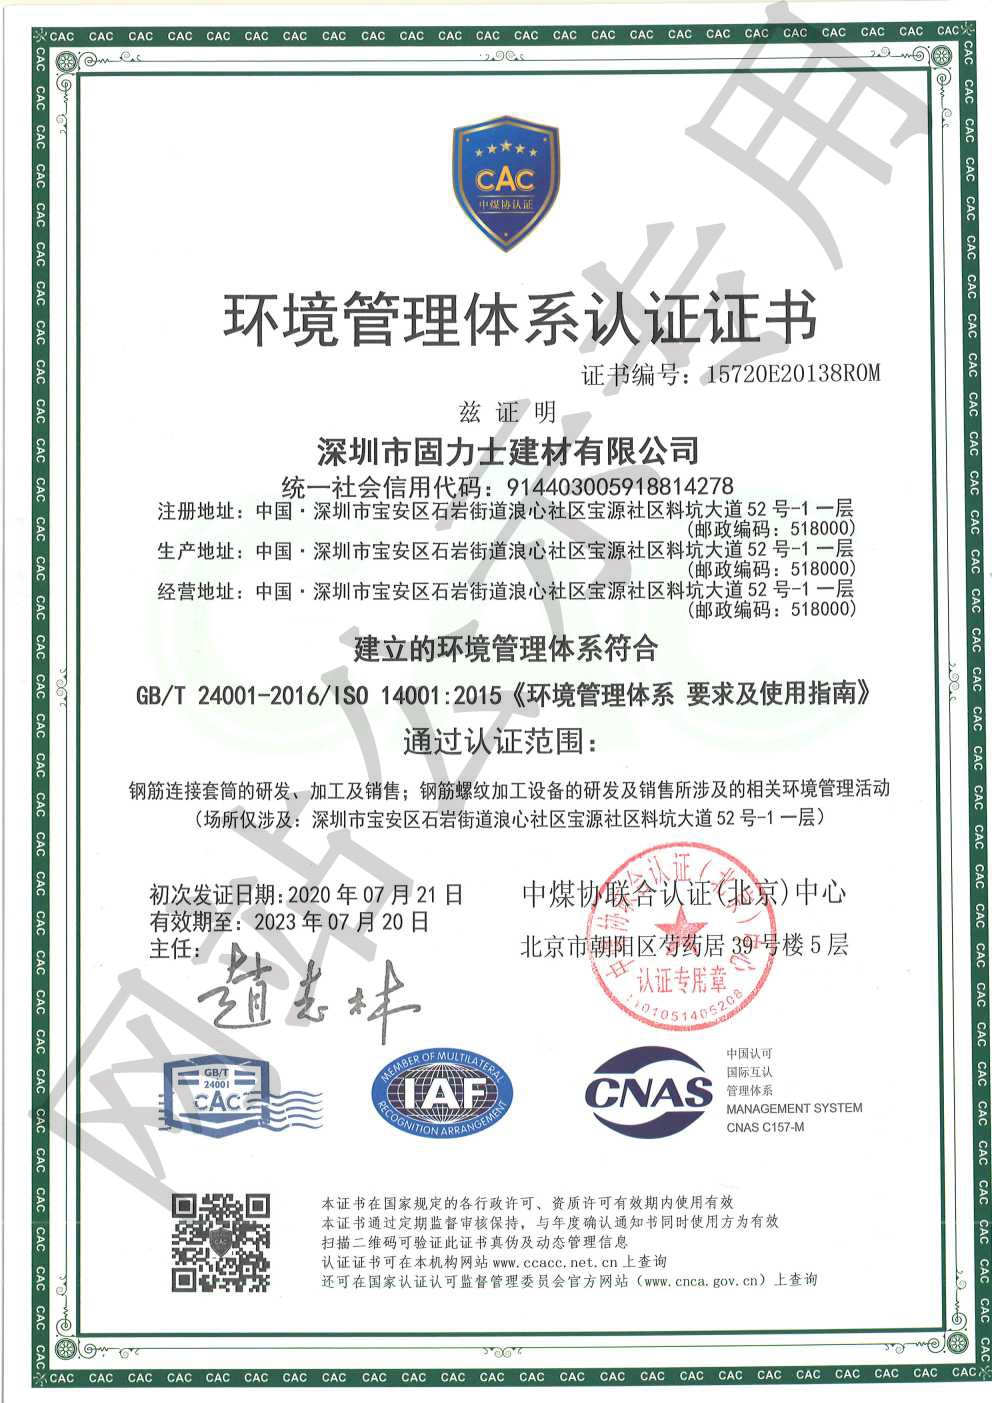 塔城ISO14001证书